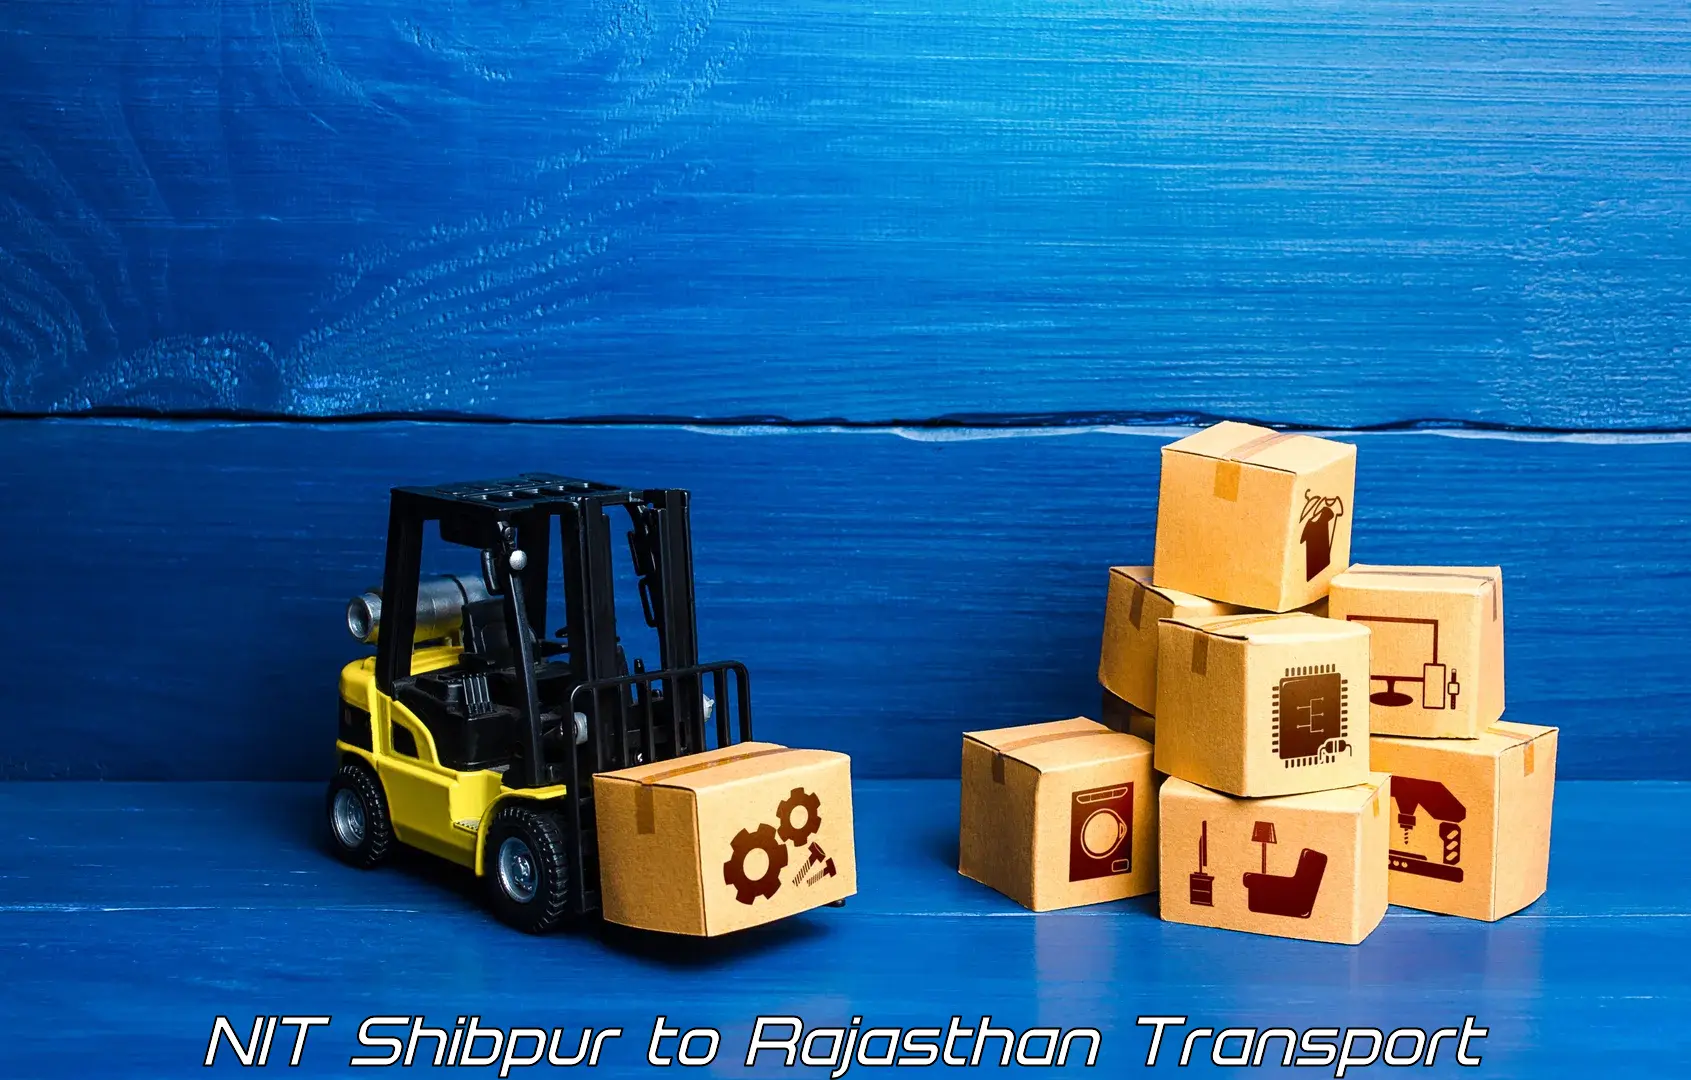 Pick up transport service NIT Shibpur to Pratapgarh Rajasthan